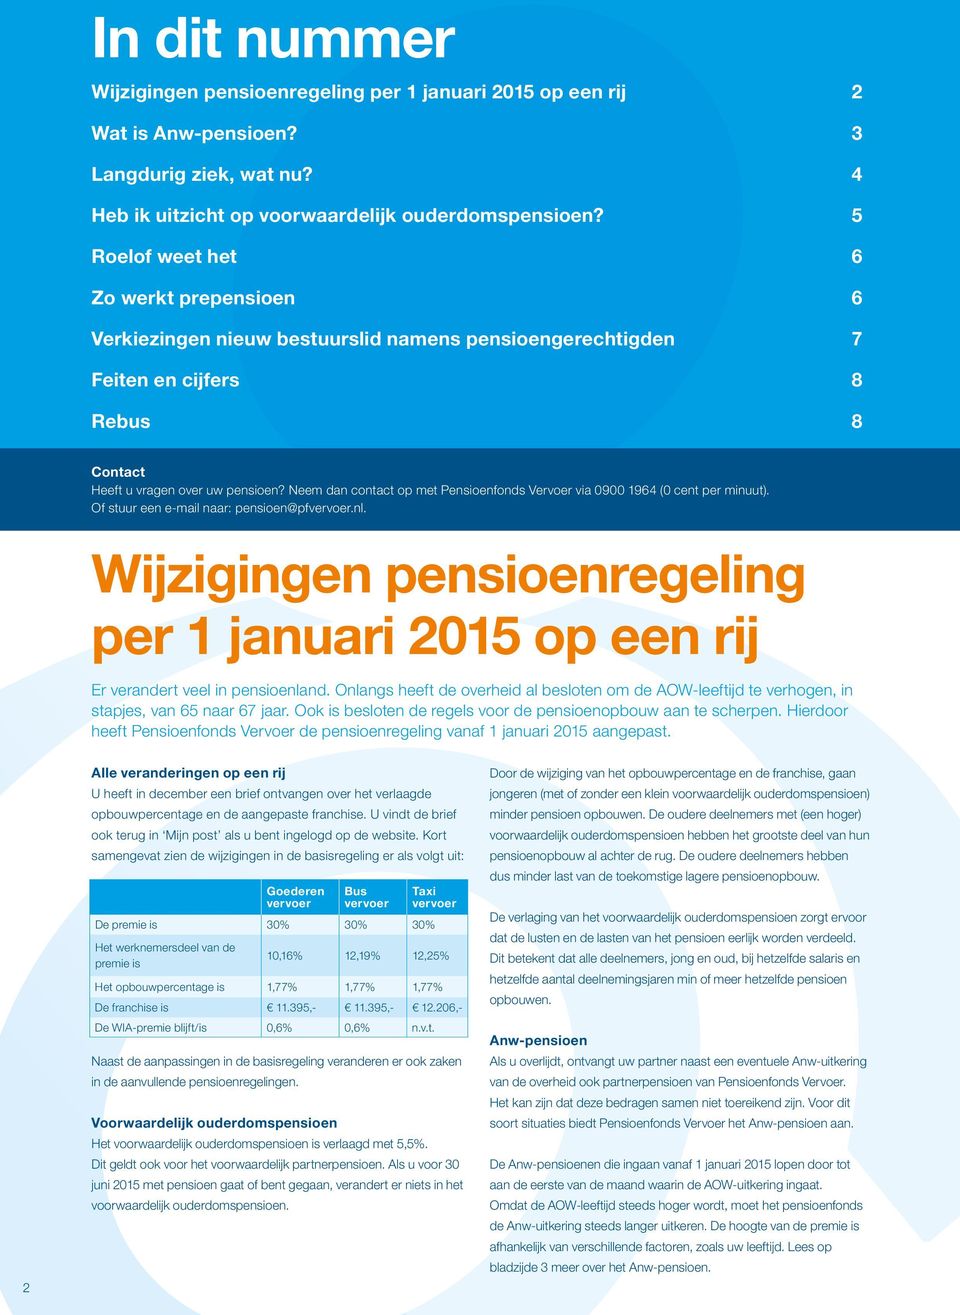 Neem dan contact op met Pensioenfonds Vervoer via 0900 1964 (0 cent per minuut). Of stuur een e-mail naar: pensioen@pfvervoer.nl.